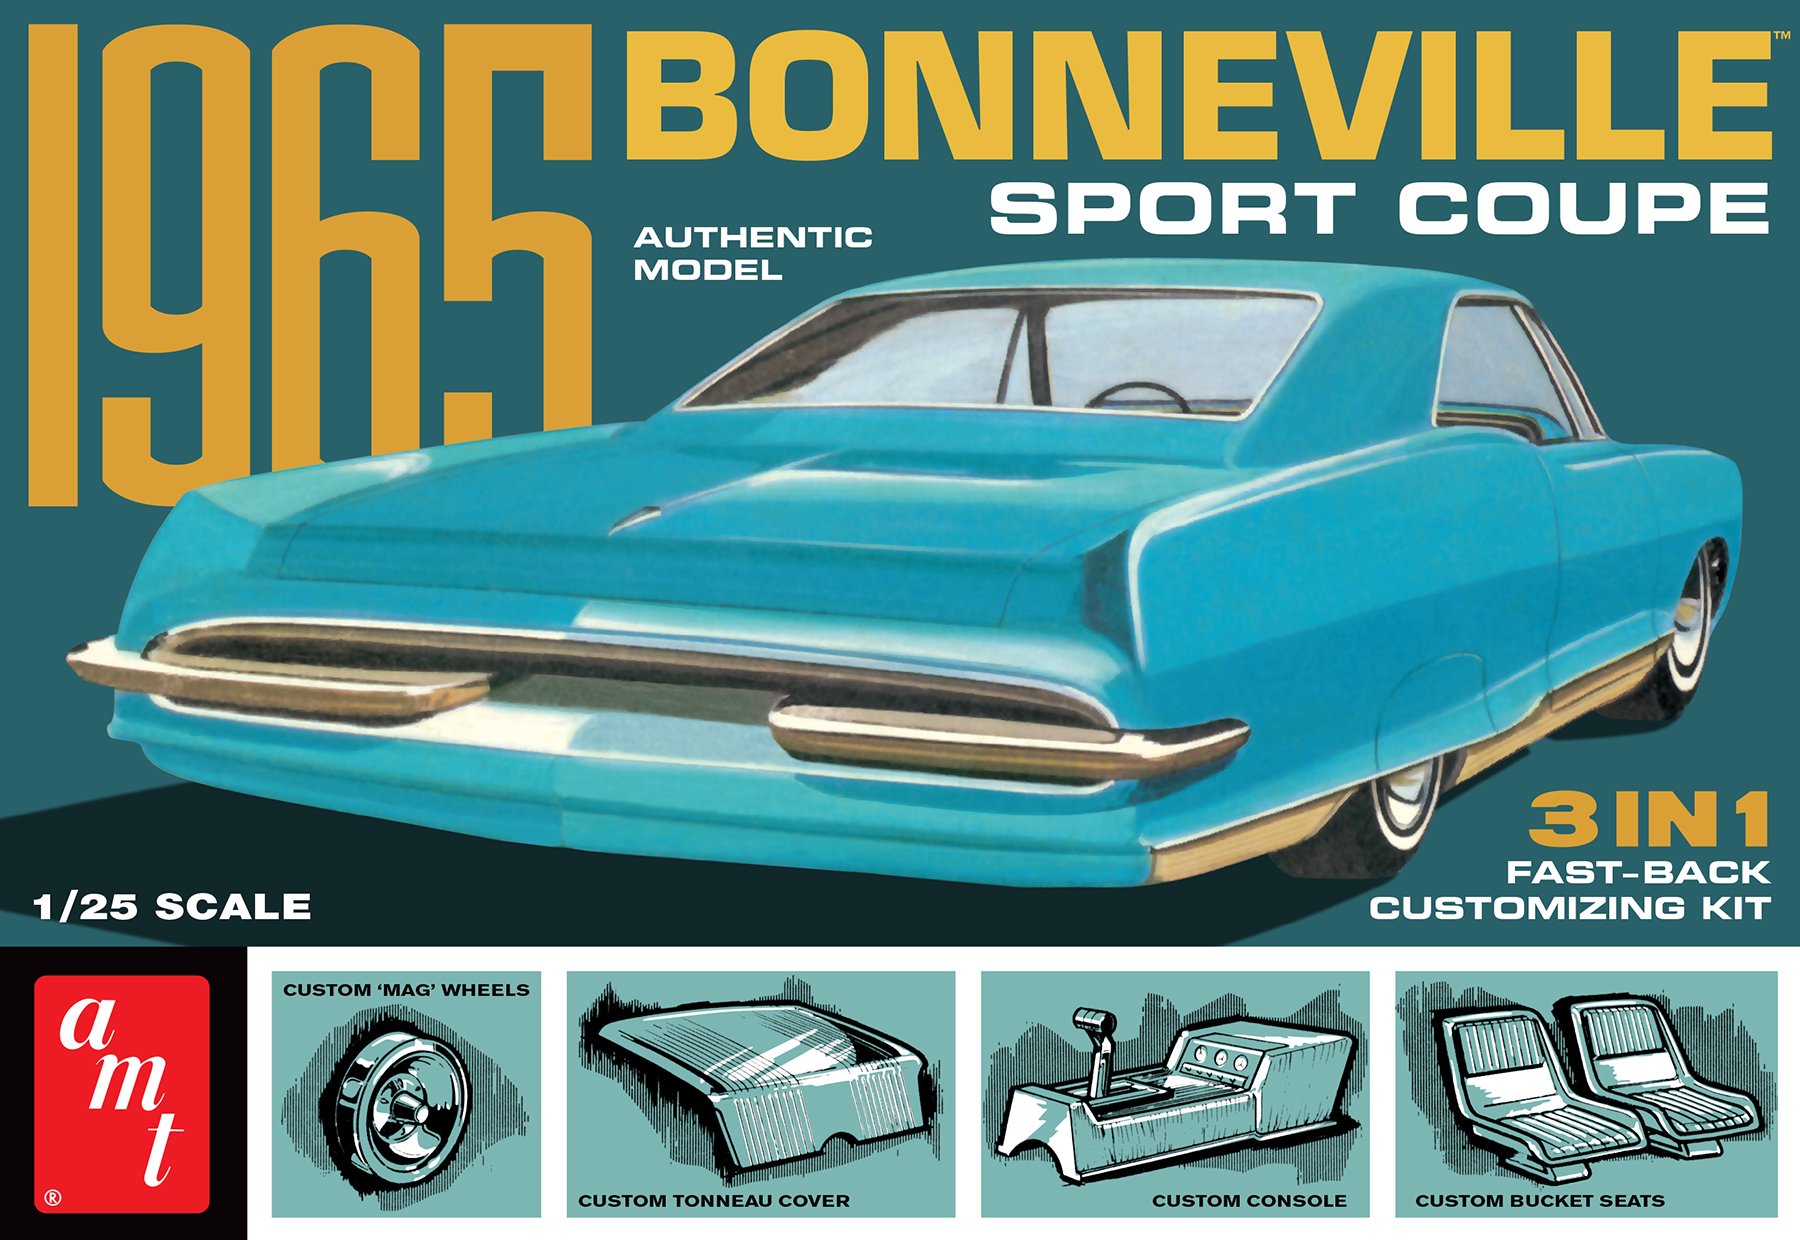 1965 Pontiac Bonneville Sport Coupe (3 in 1)